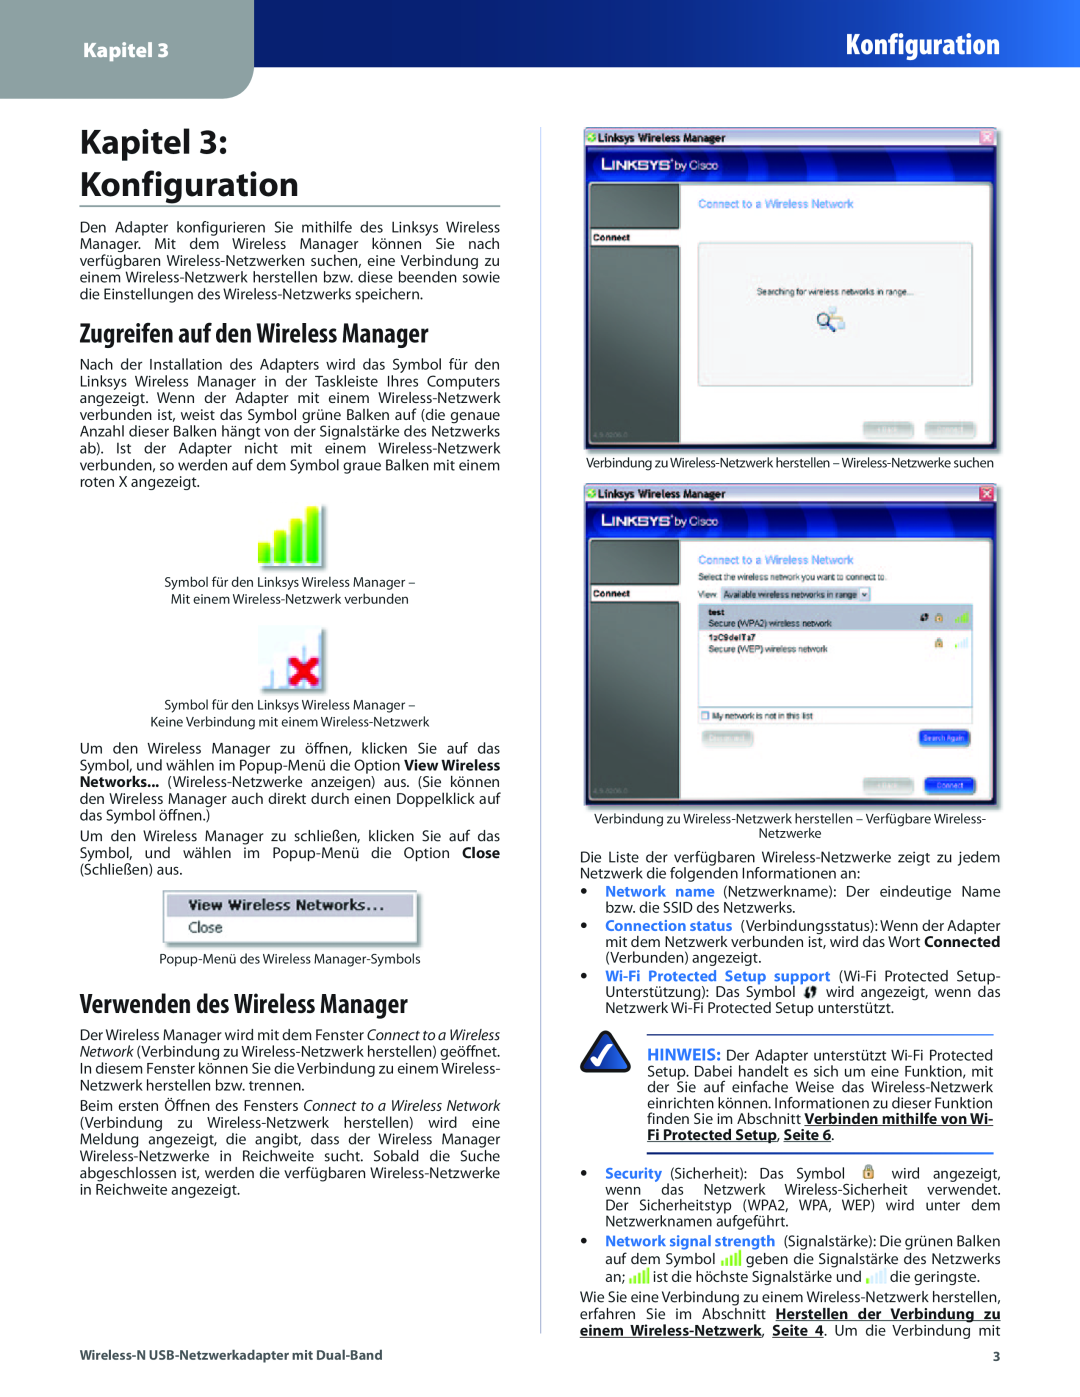 Cisco Systems WUSB600N manual Kapitel Konfiguration, Zugreifen auf den Wireless Manager, Verwenden des Wireless Manager 